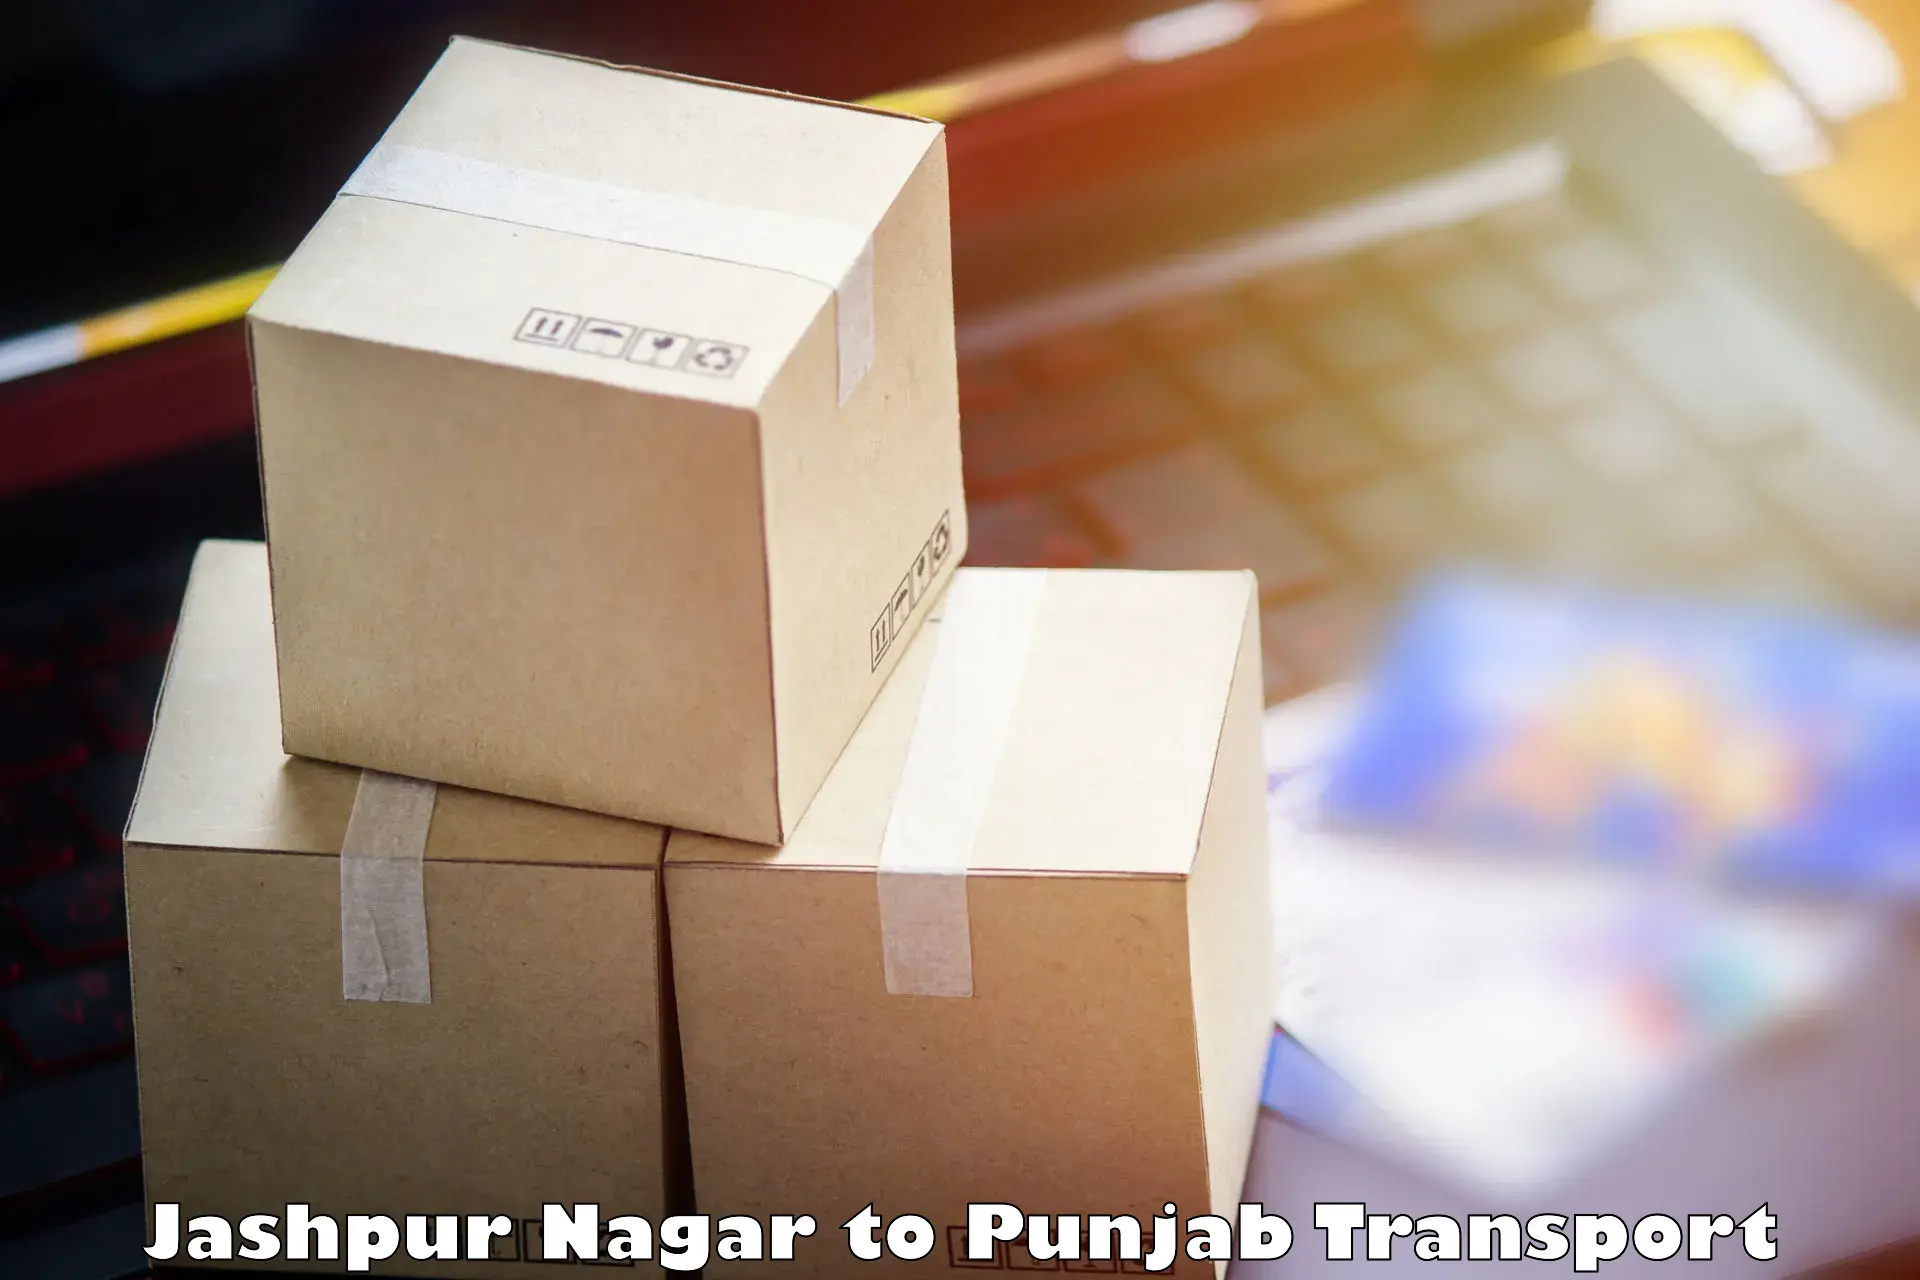 Online transport service Jashpur Nagar to Samana